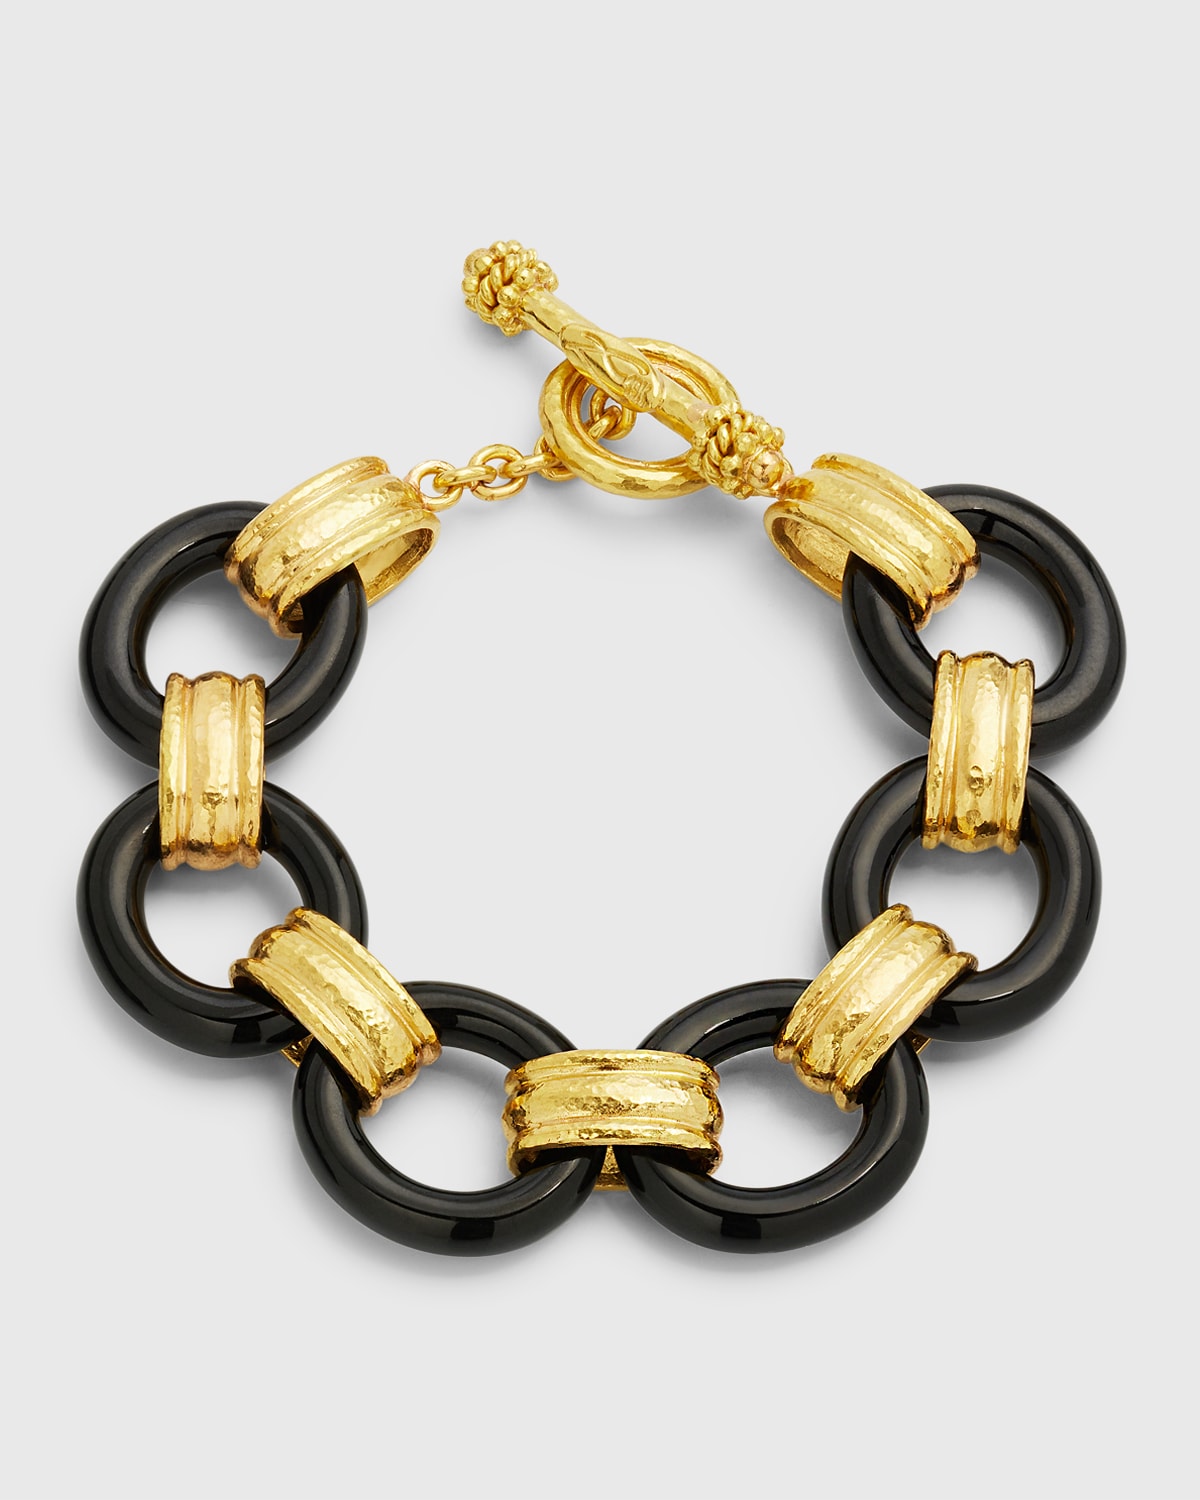 Elizabeth Locke 19K Large Black Jade and Gold Connector Bracelet